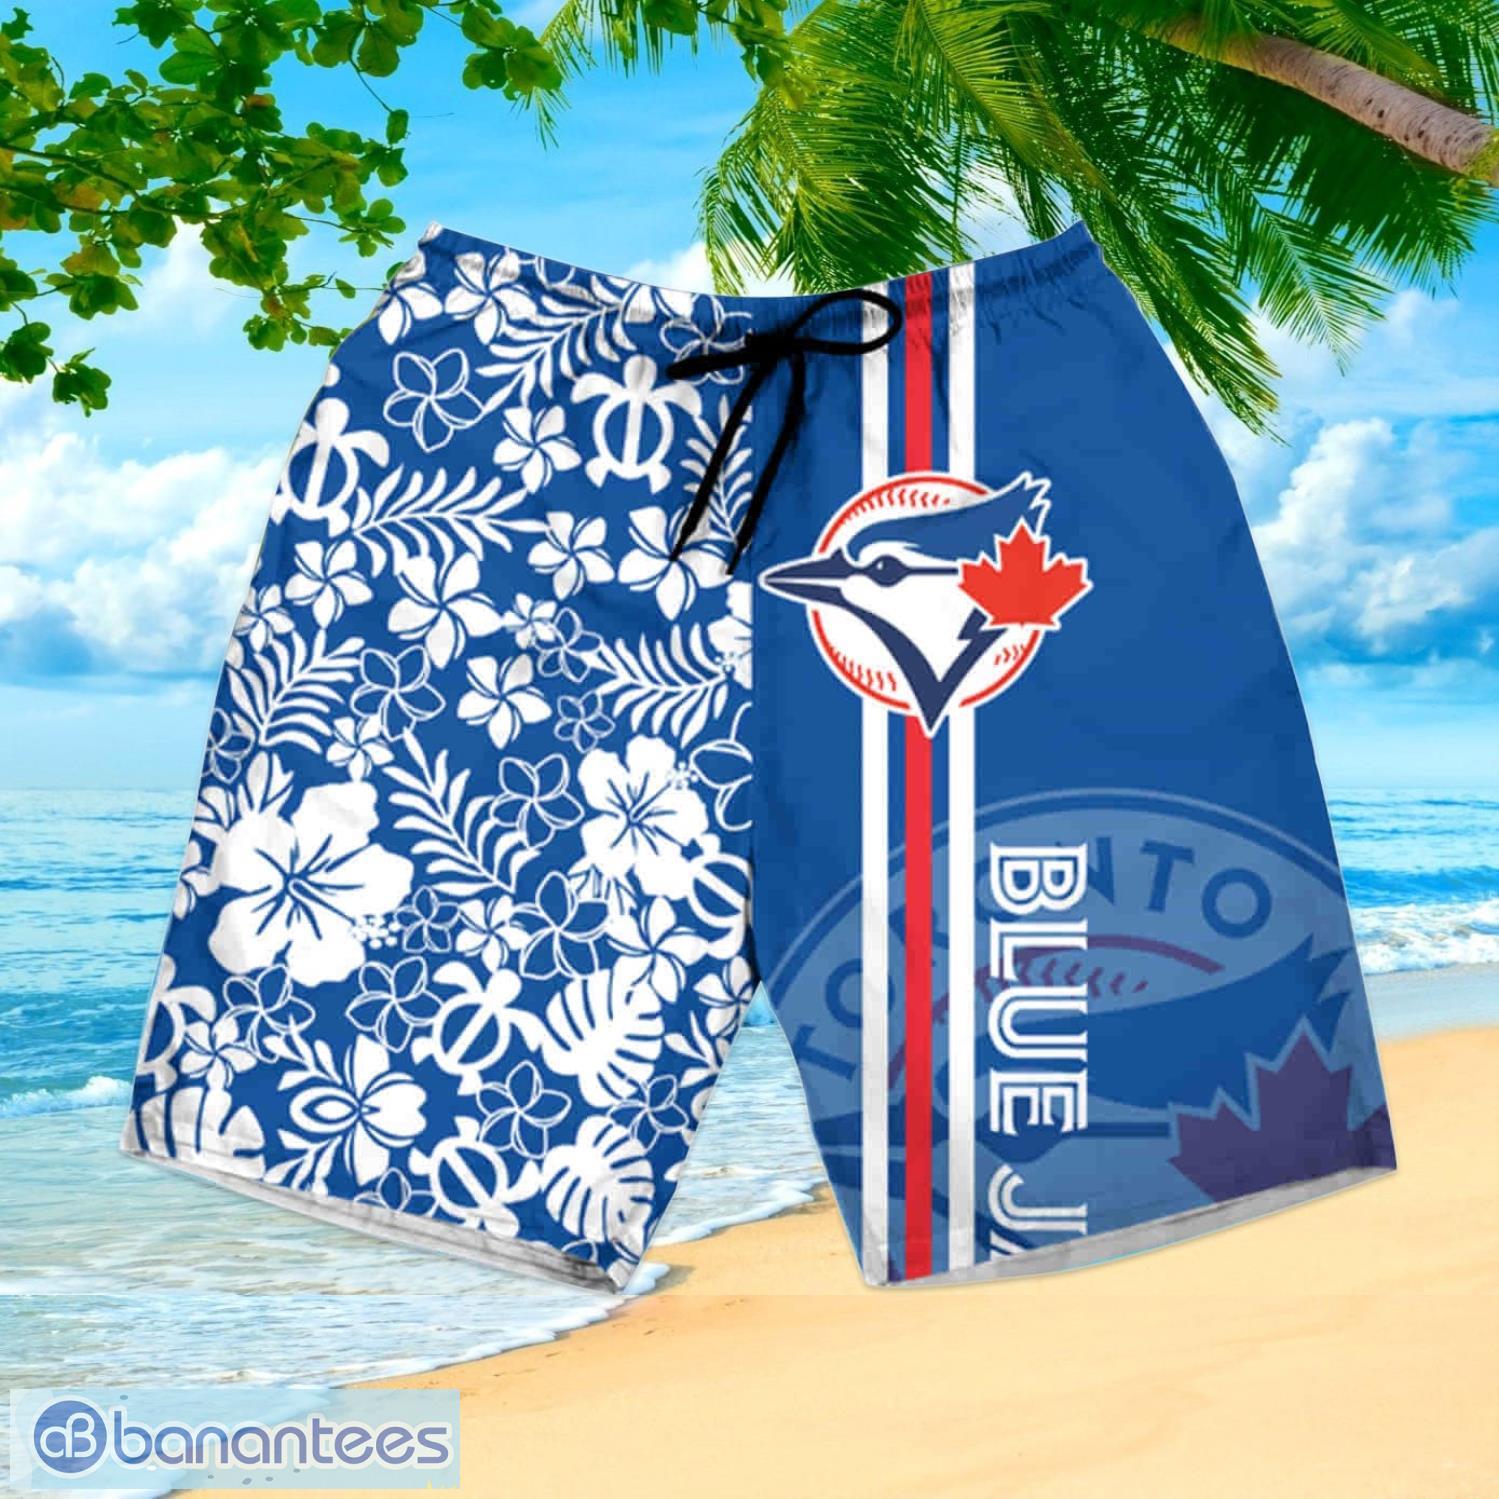 MLB Toronto Blue Jays Hawaiian Shirt Aloha Palm Trees Beach Lovers